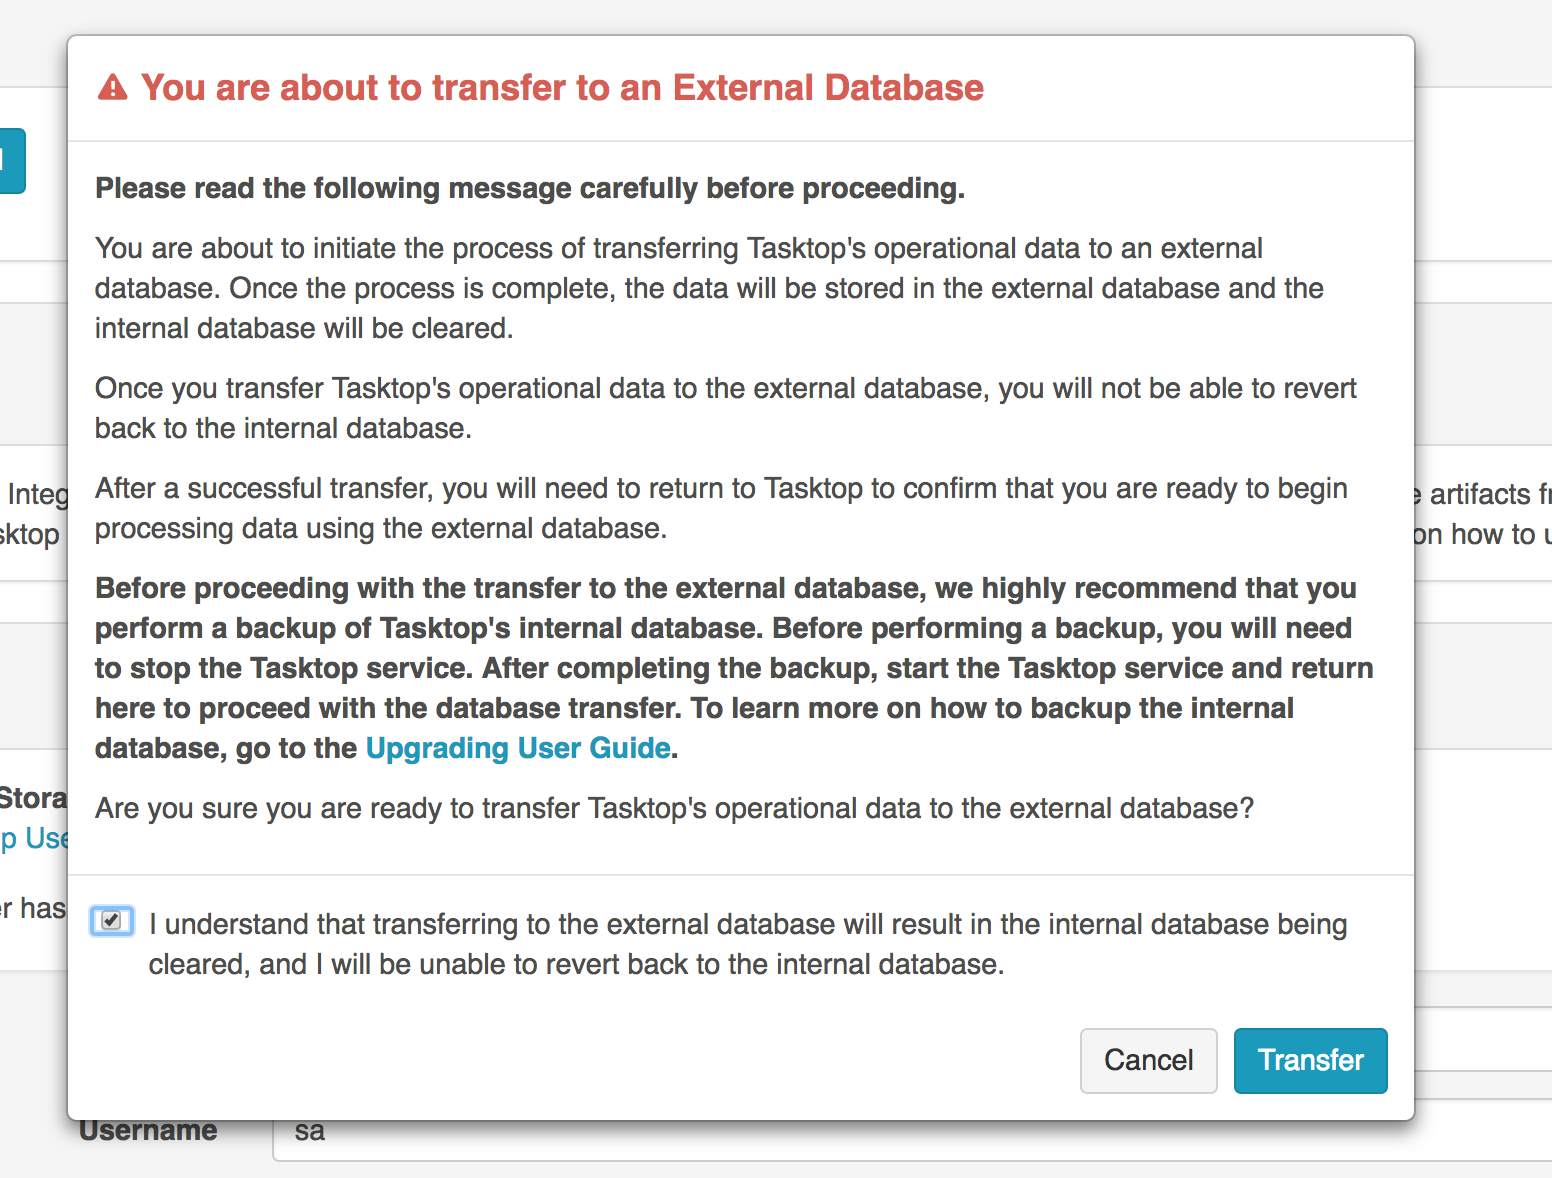 Transfer to External Database Warning